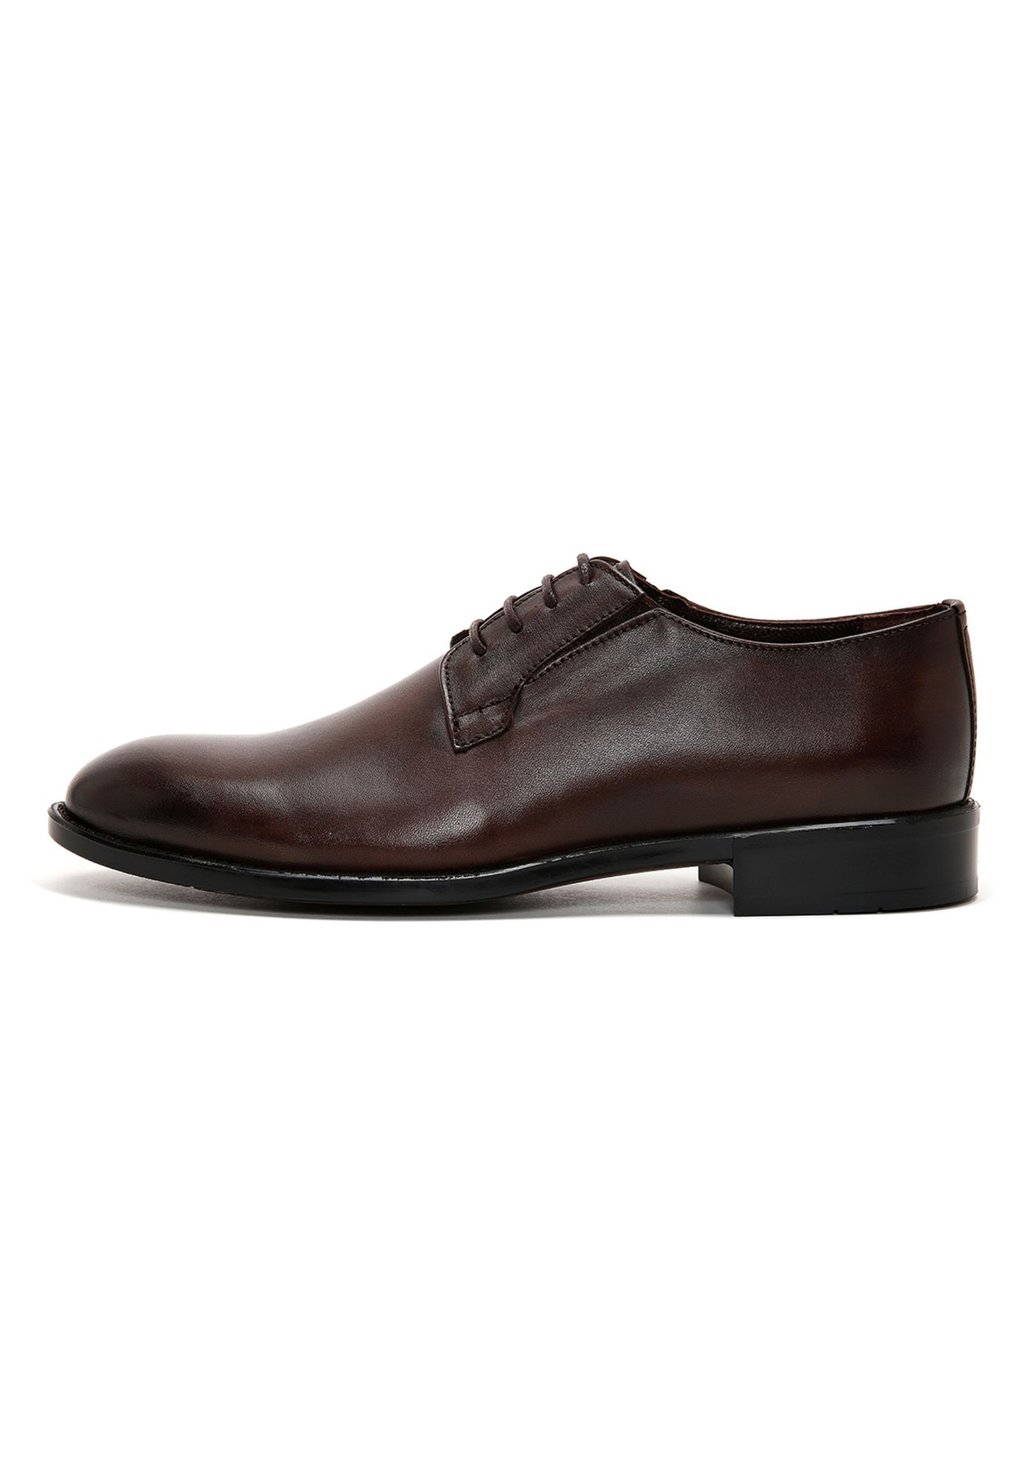 Элегантные туфли на шнуровке Derimod, коричневые туфли на шнуровке classic derimod цвет brown